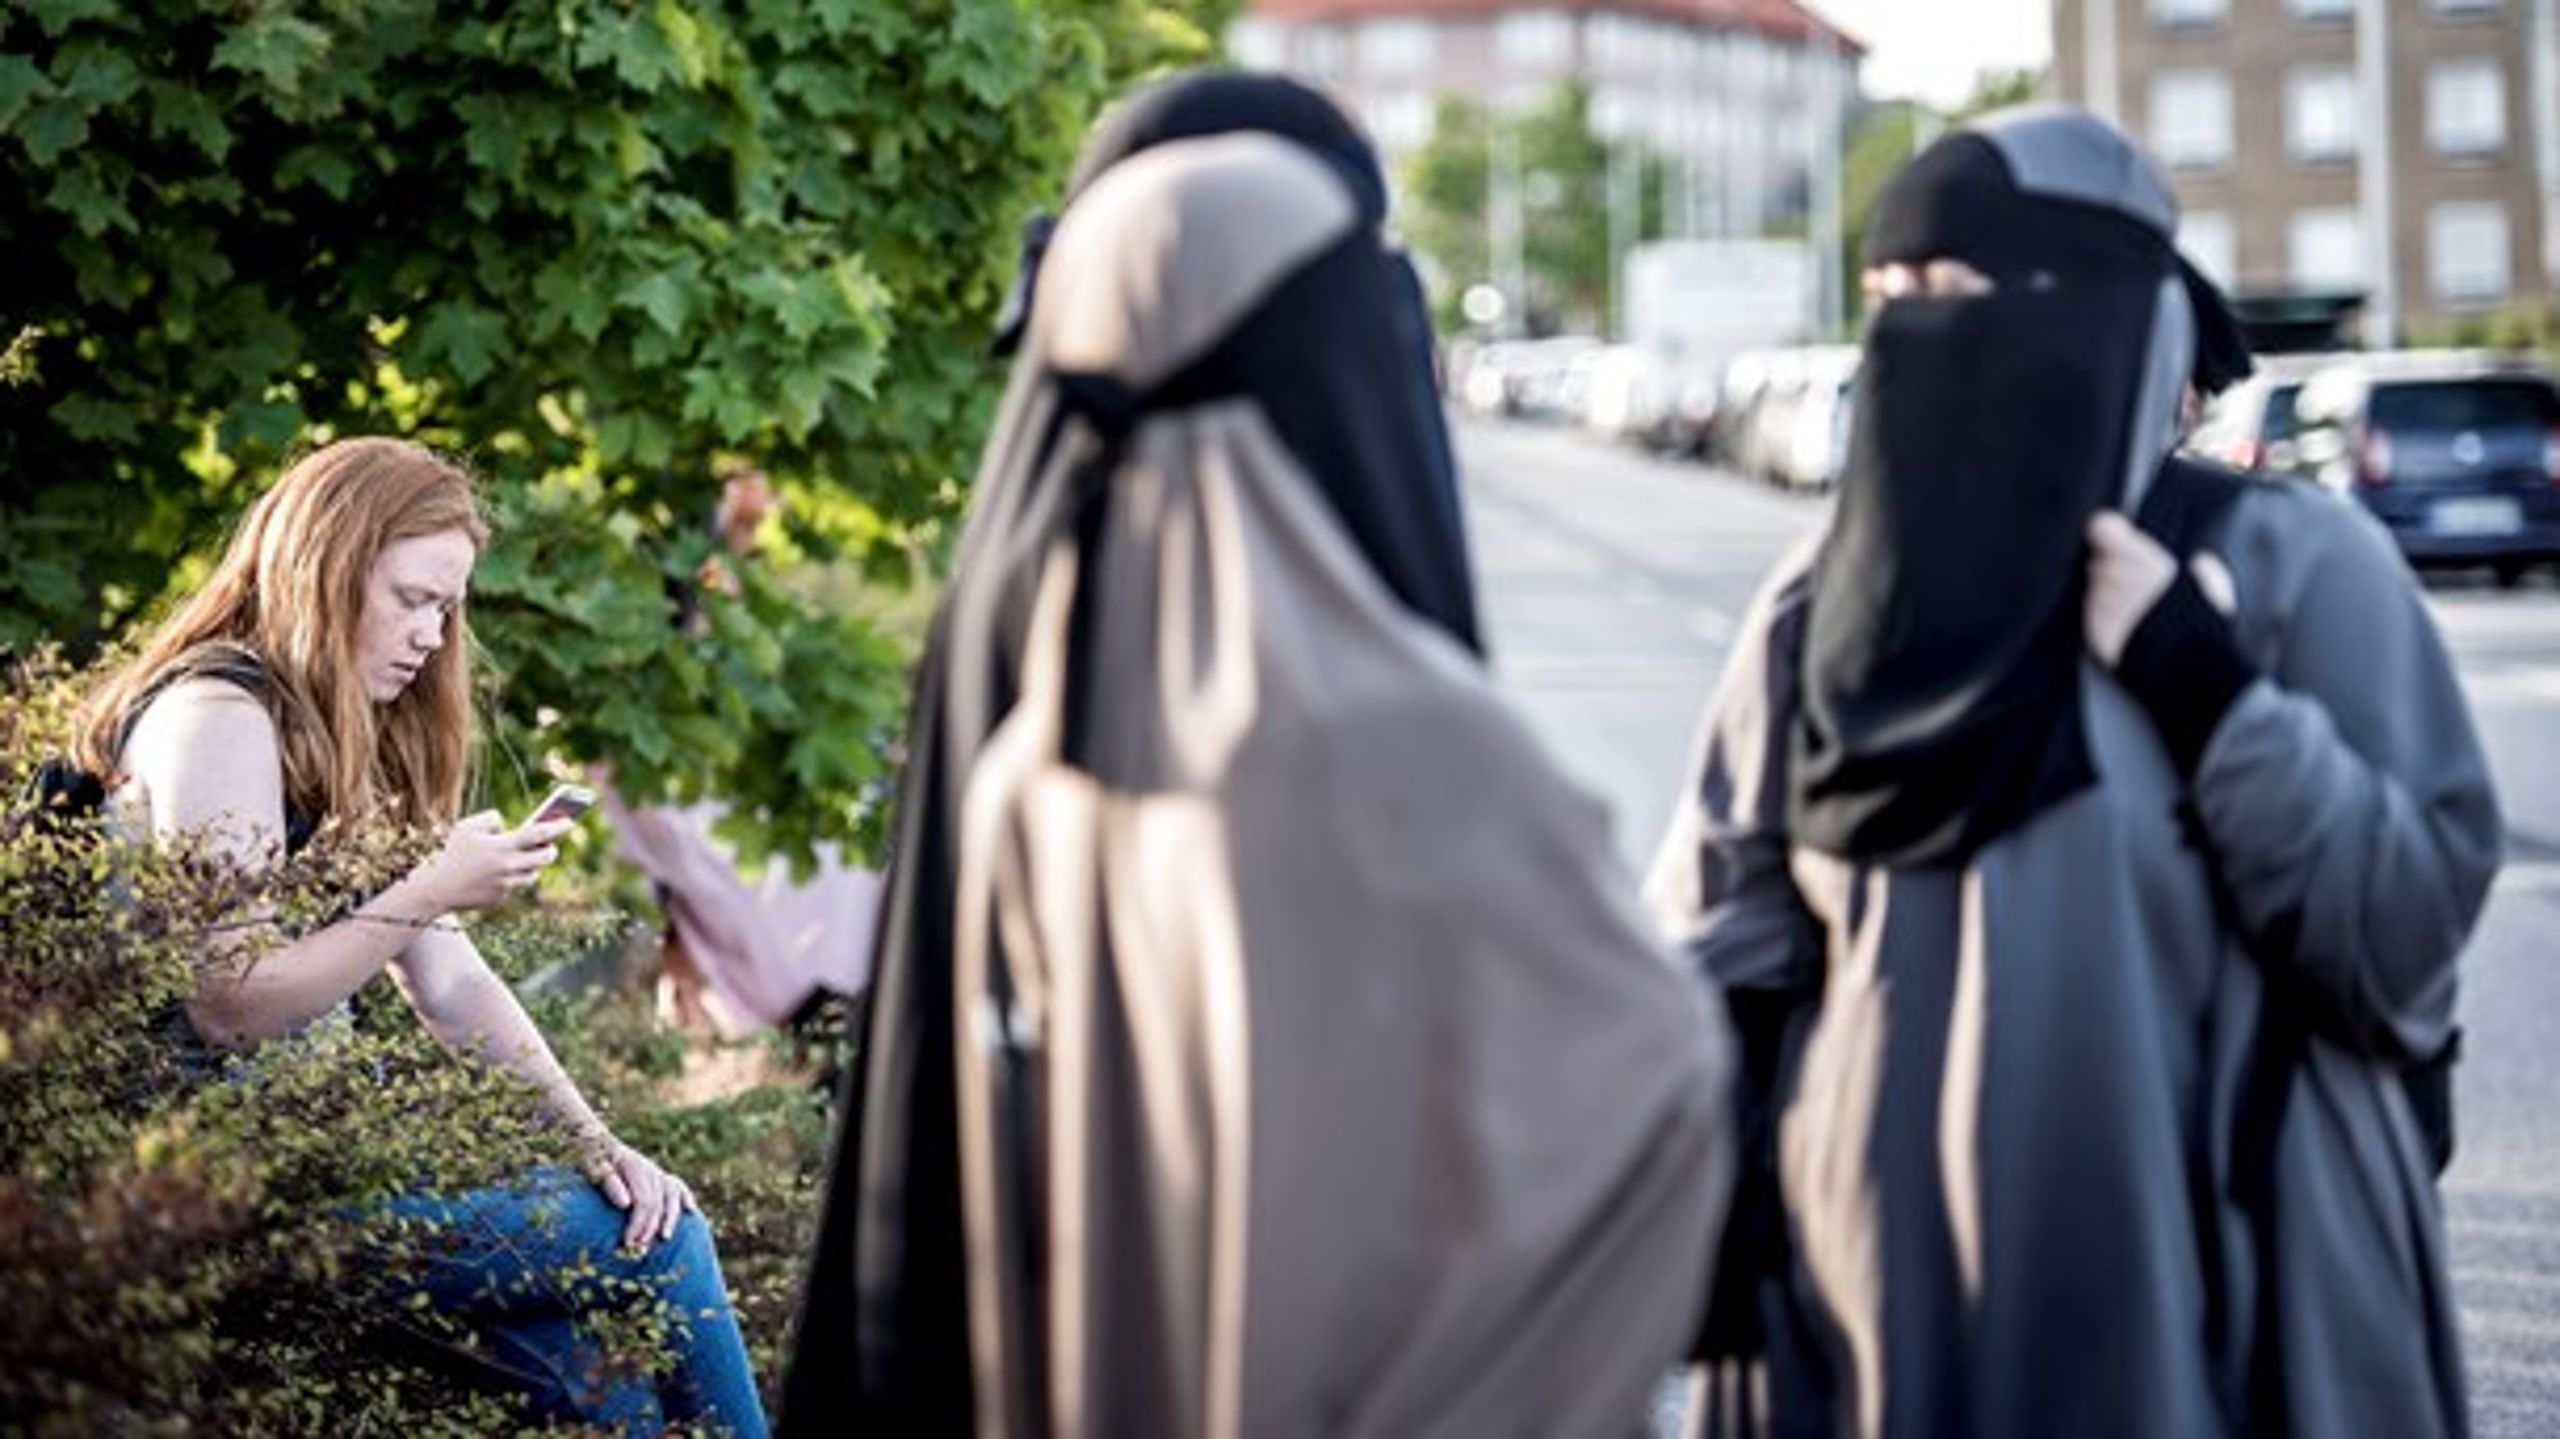 Vi skal stille krav om, at folk fra islamiske kulturer på det lavpraktiske plan viser, at de vil Danmark. Derfor er tørklæder, leverpostej og badeforhæng også vigtigt, skriver Marie Karup (DF). (Arkivfoto)